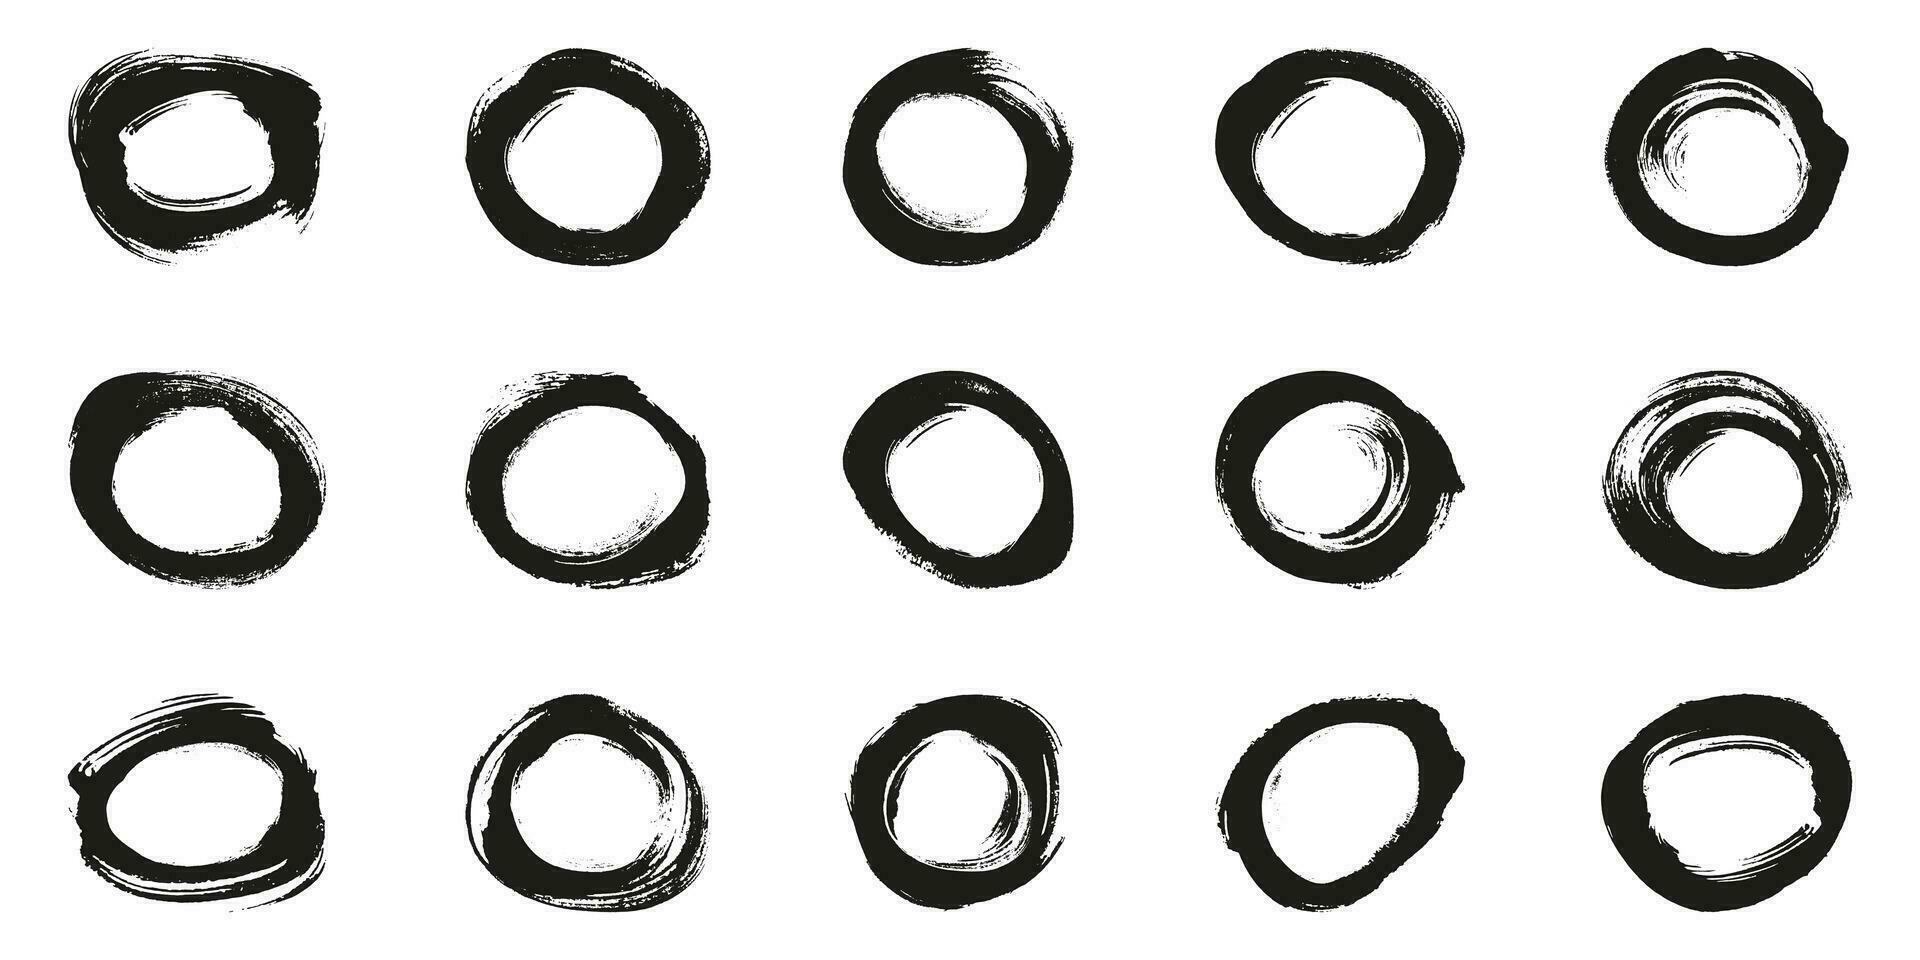 ronde vorm beroerte inkt kader, grunge verf set. abstract zwart circulaire ontwerp. vuil cirkel borstel symbool verzameling. postzegel grafisch element. geïsoleerd vector illustratie.